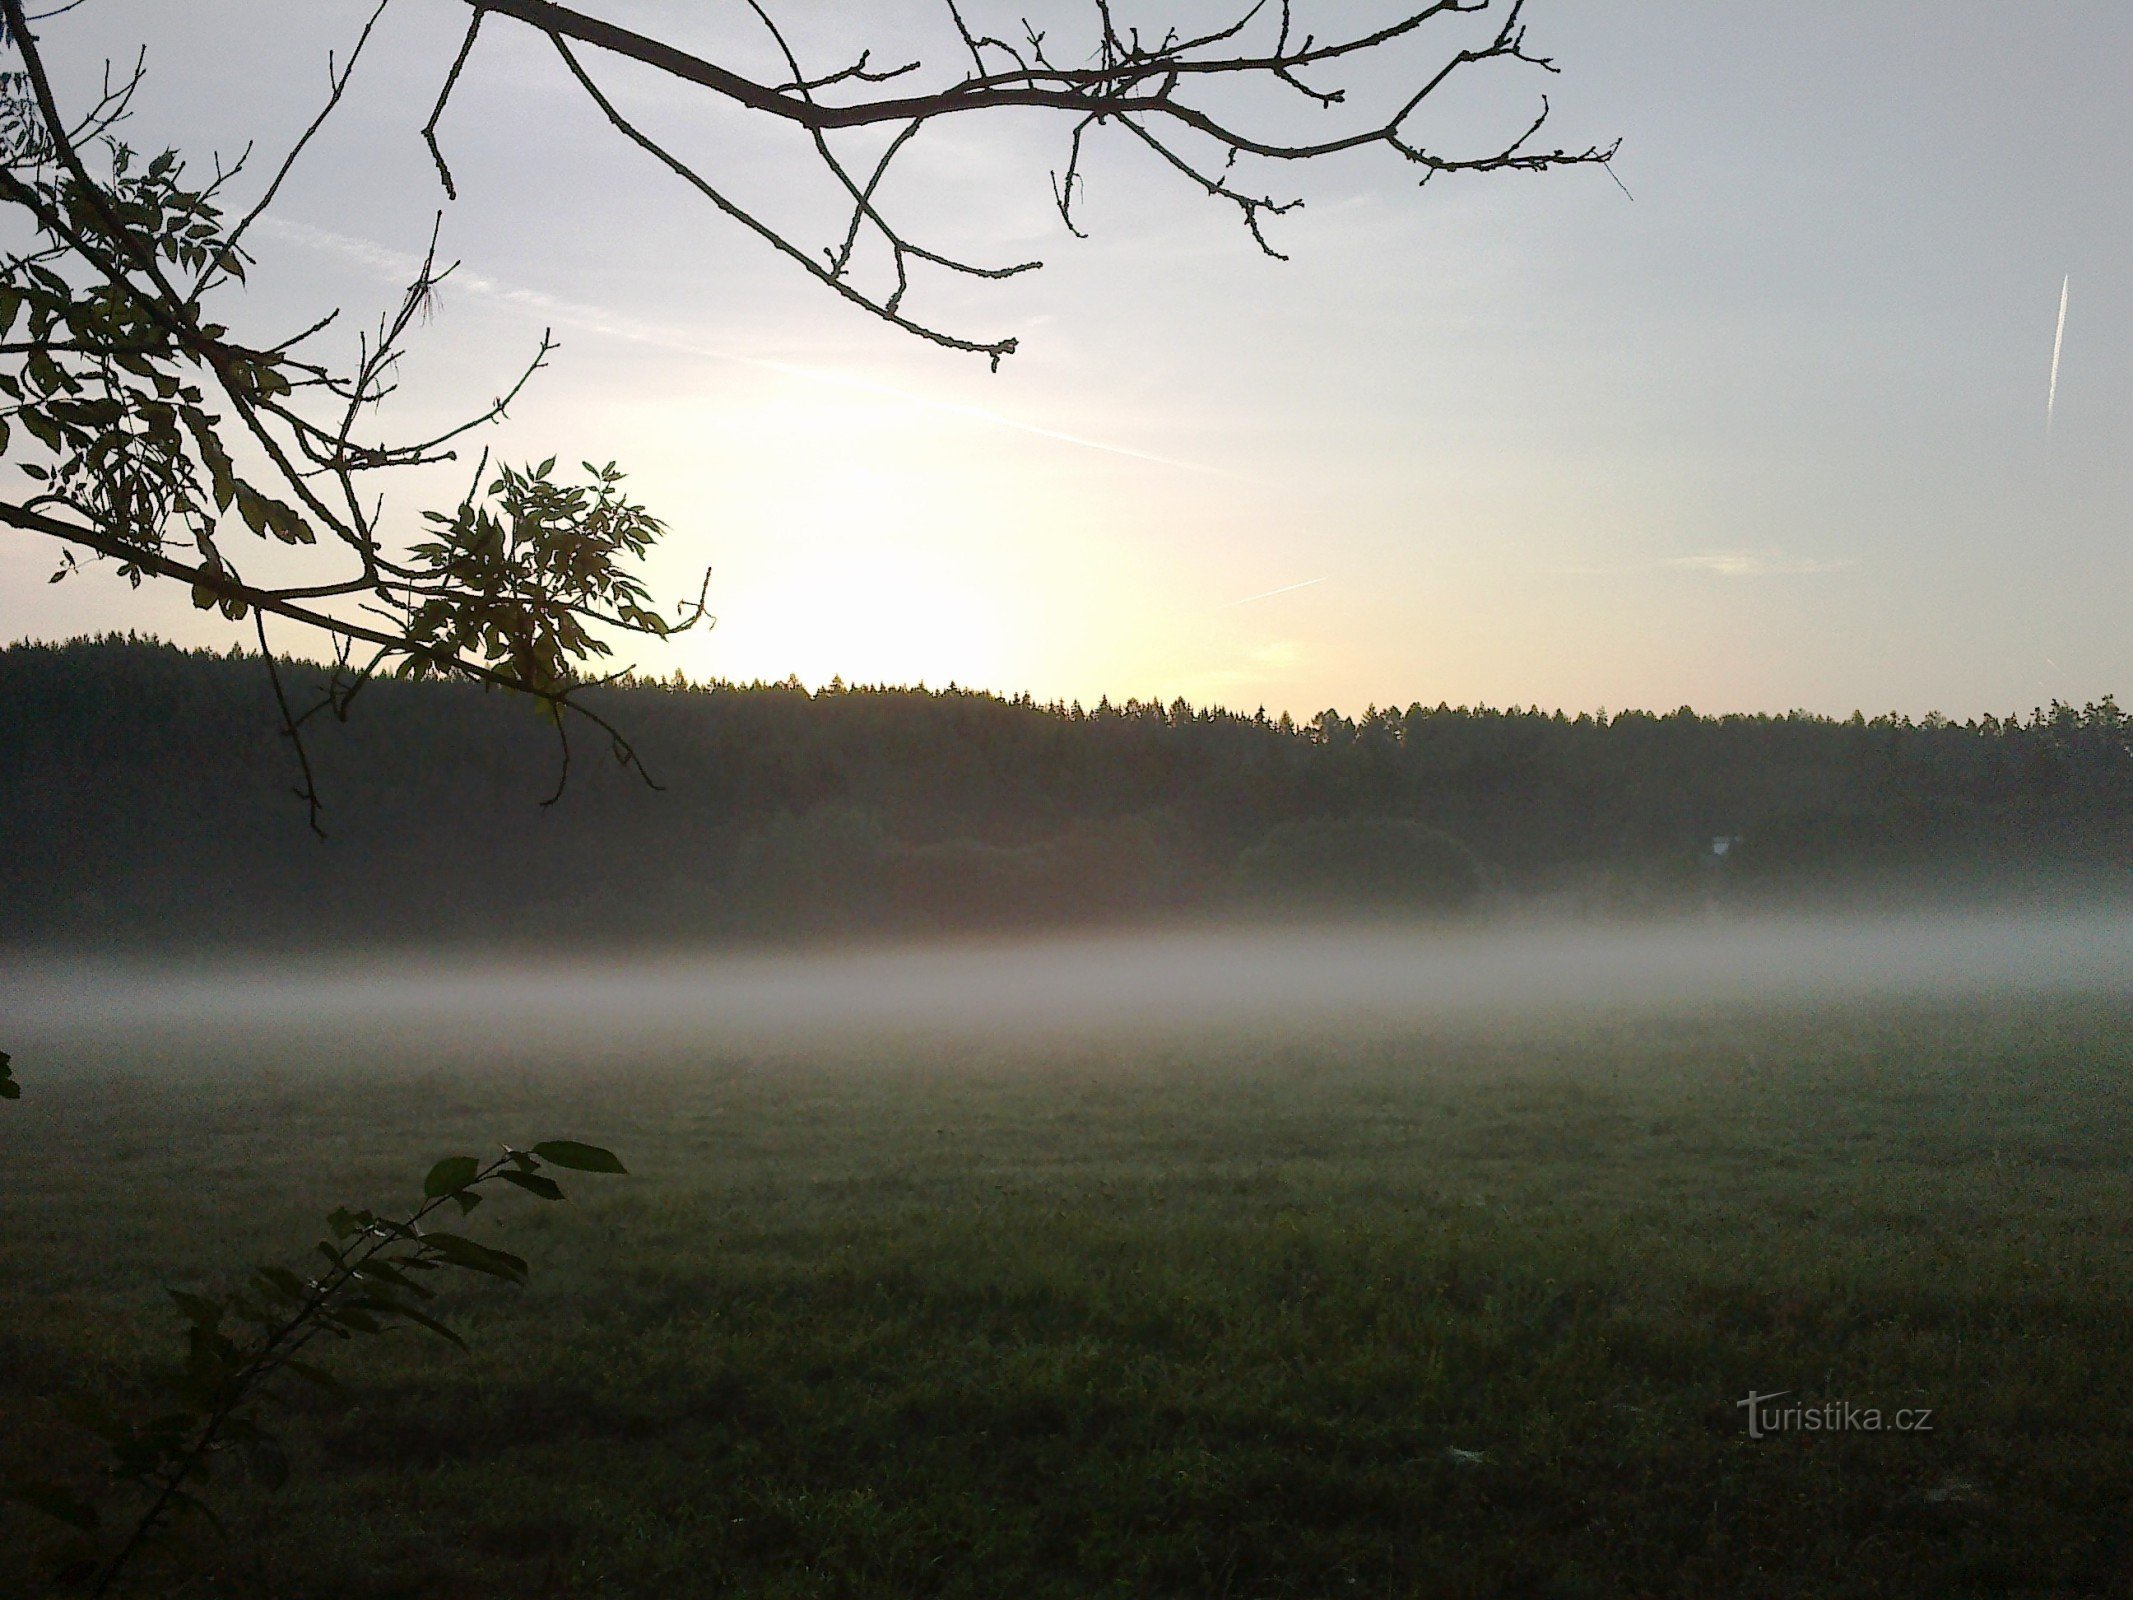 Fog near Pohodlí